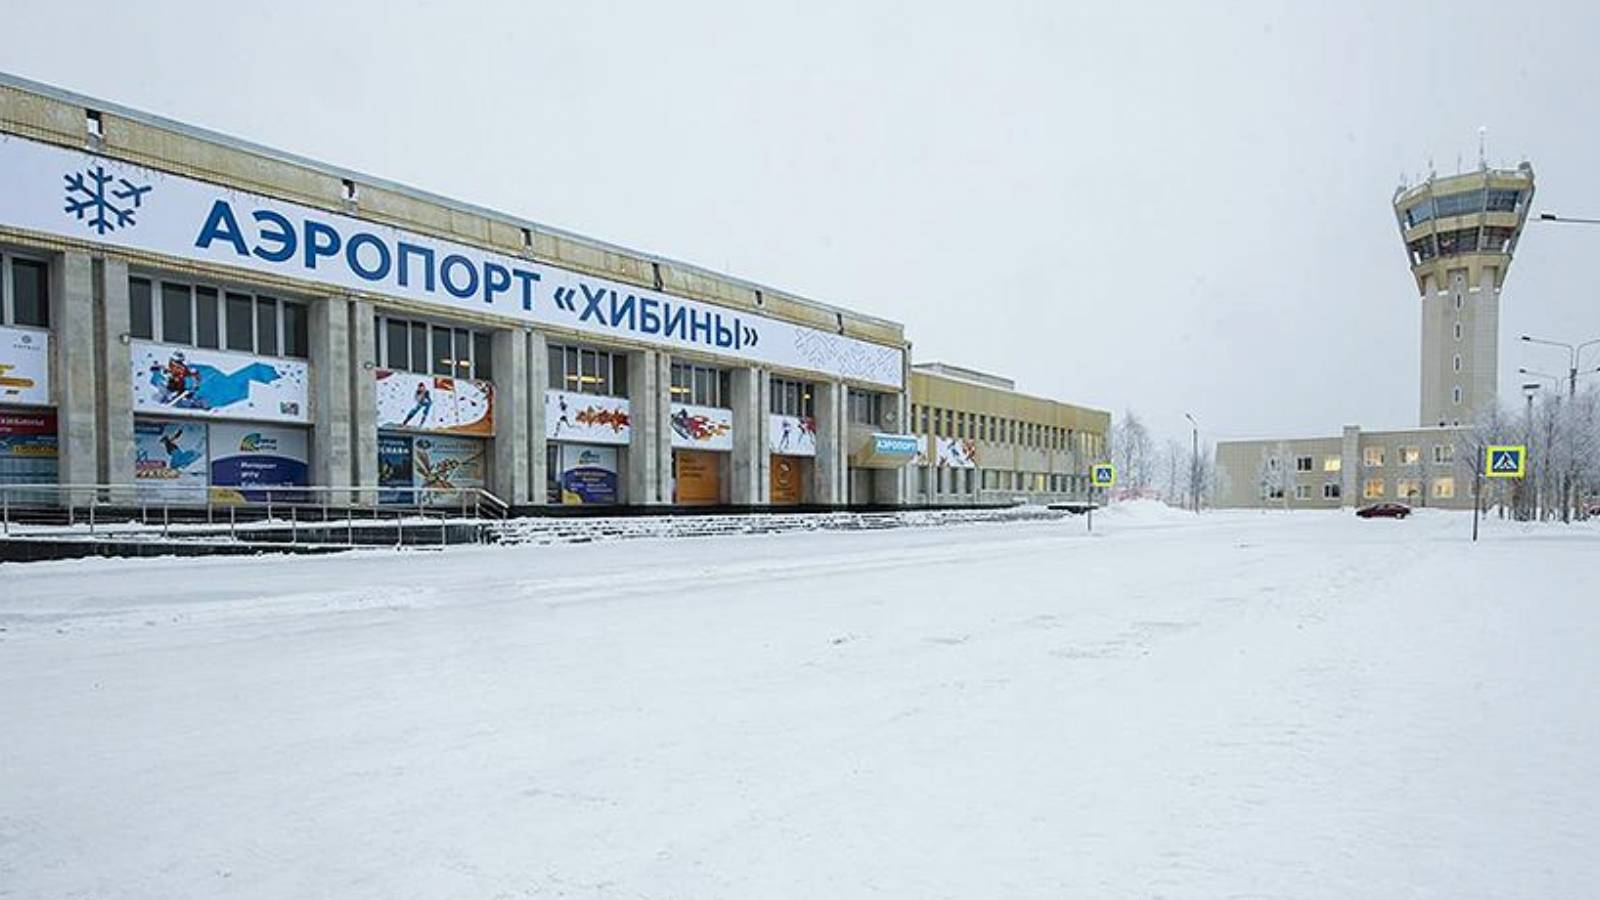 Online табло аэропорта хибины (кировск-апатиты) вылет, расписание самолетов вылеты